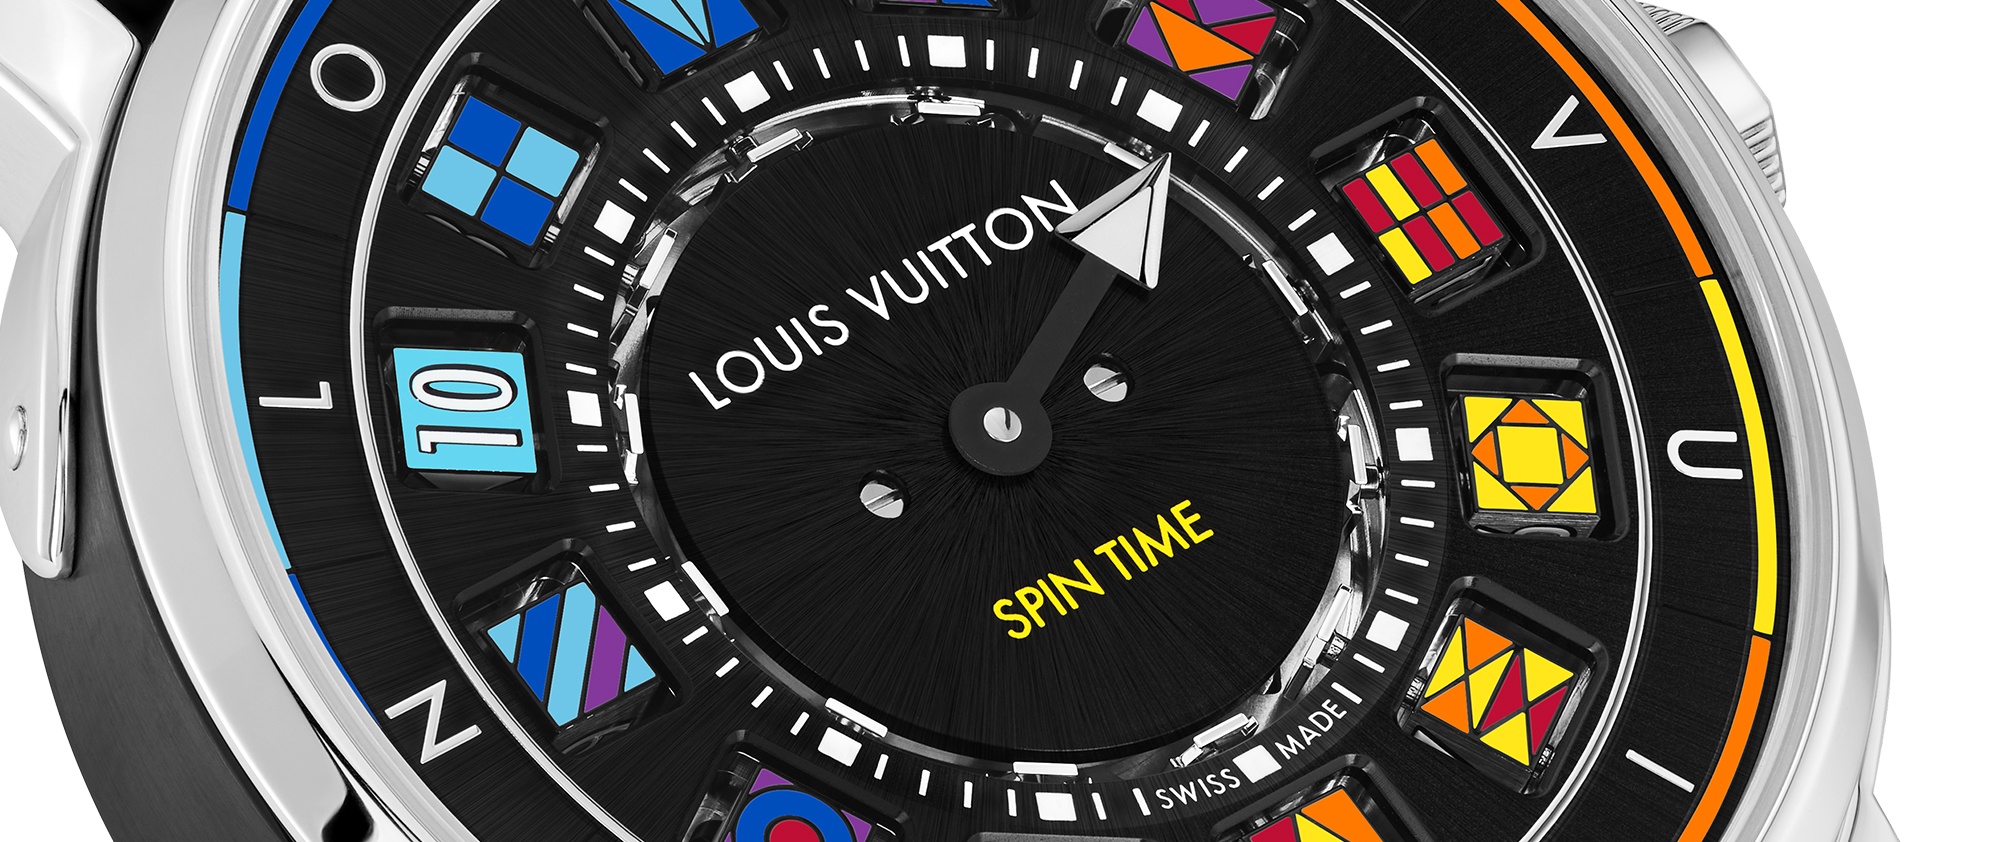 Up Close: Louis Vuitton Tambour Slim Vivienne Jump Hours